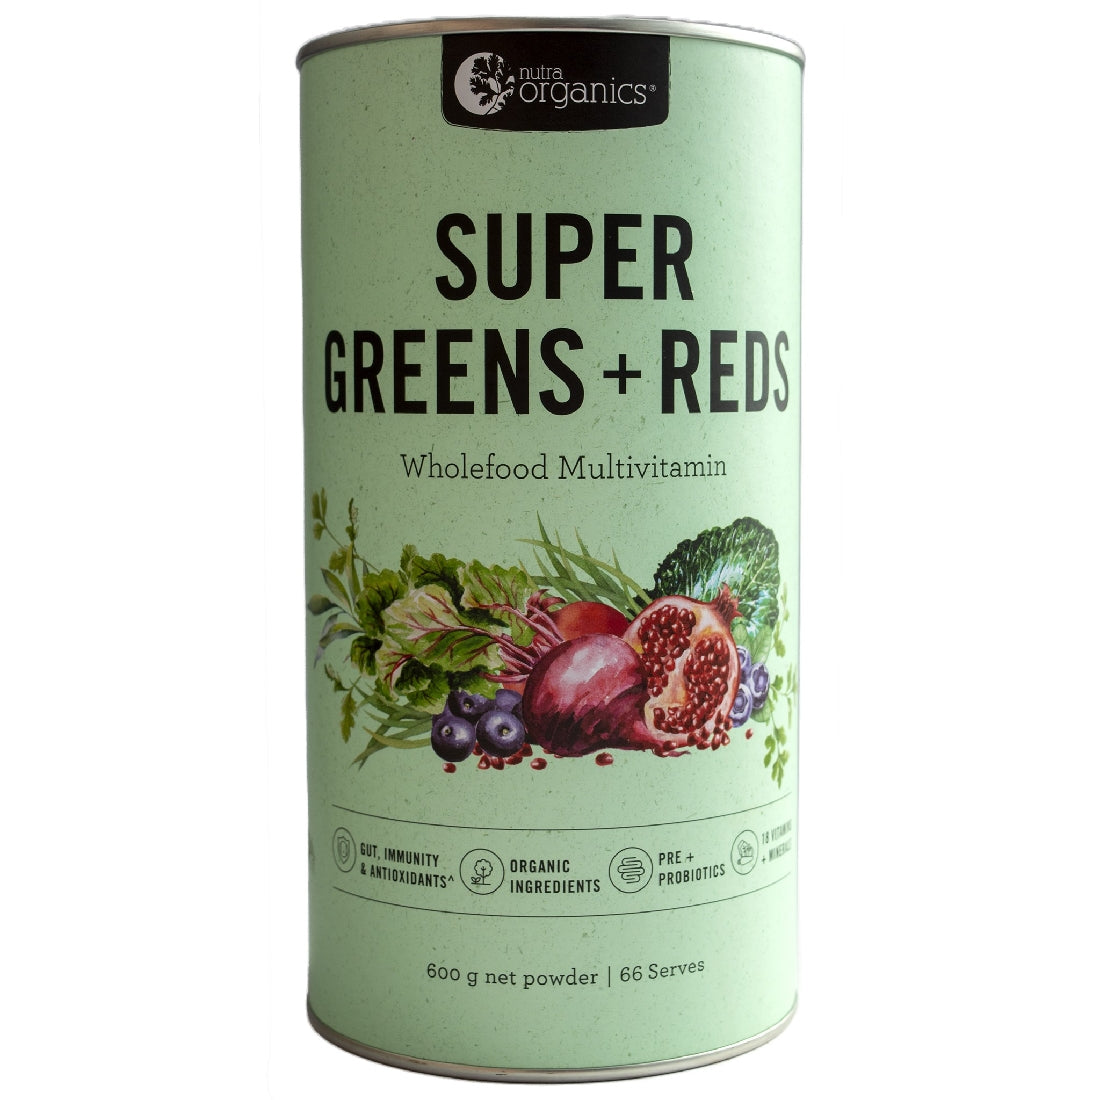 NUTRA ORGANICS SUPER GREENS & REDS 600G